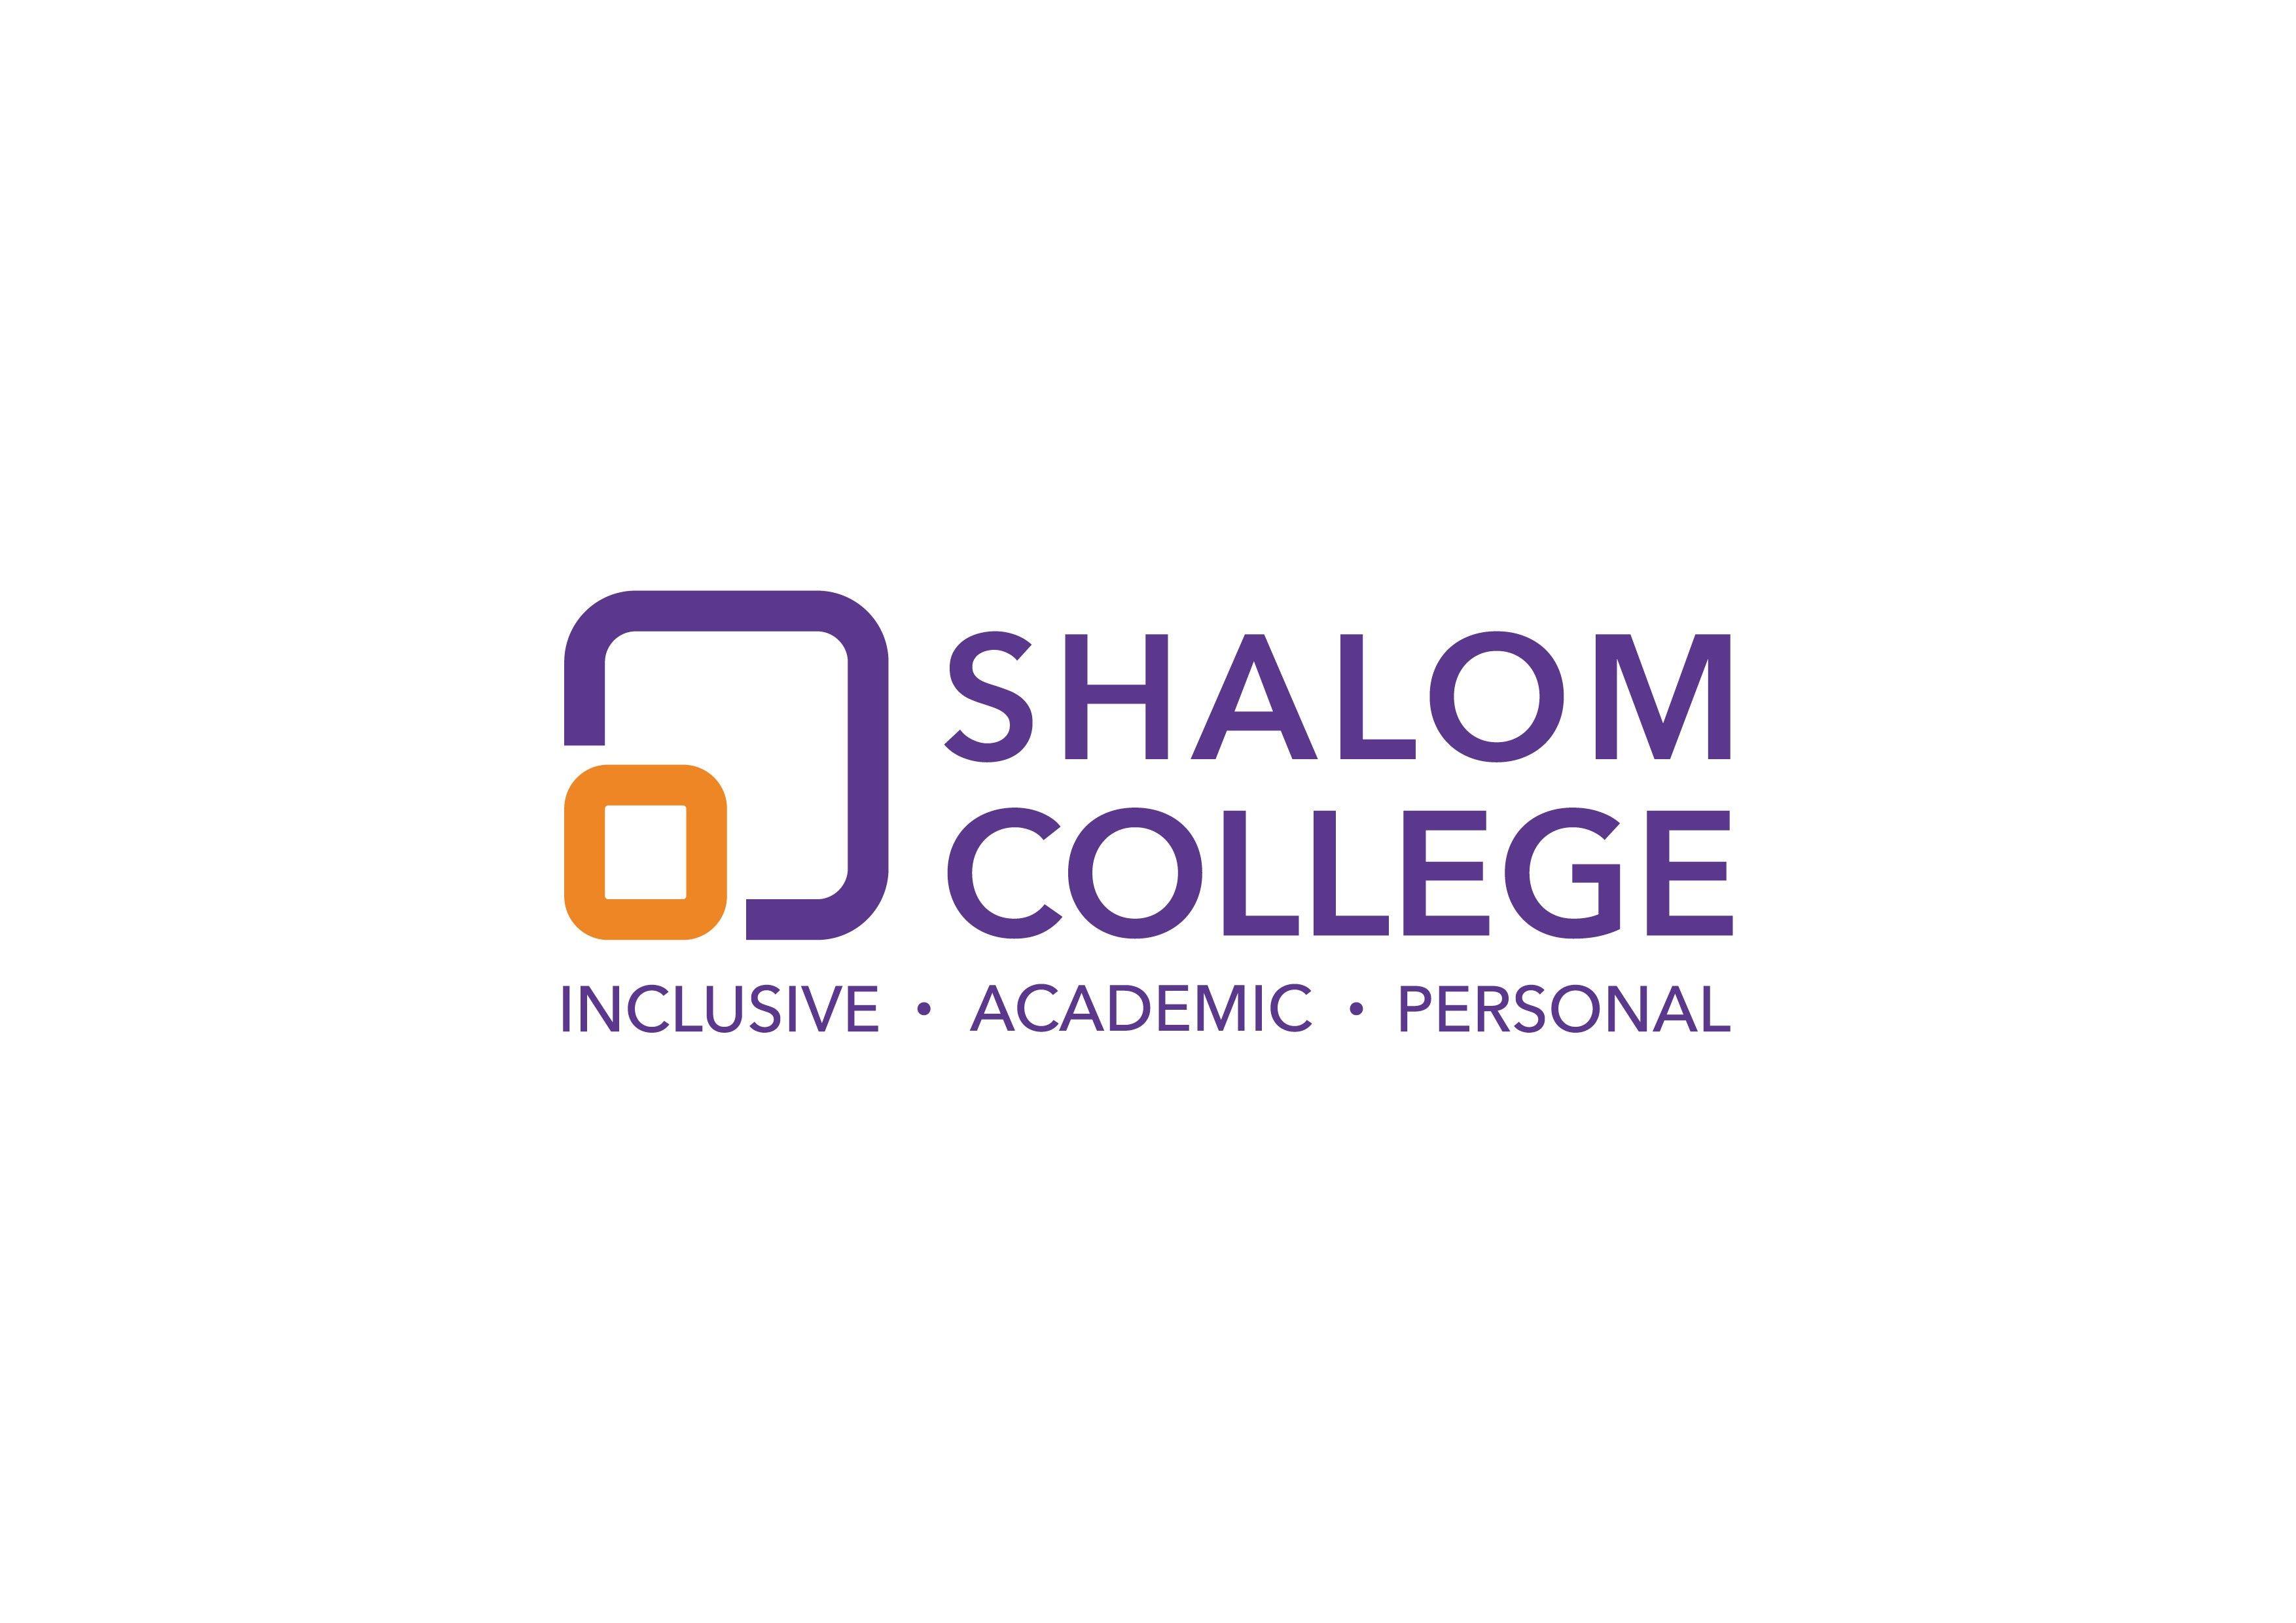 Shalom Logo - shalom college logo with tag line